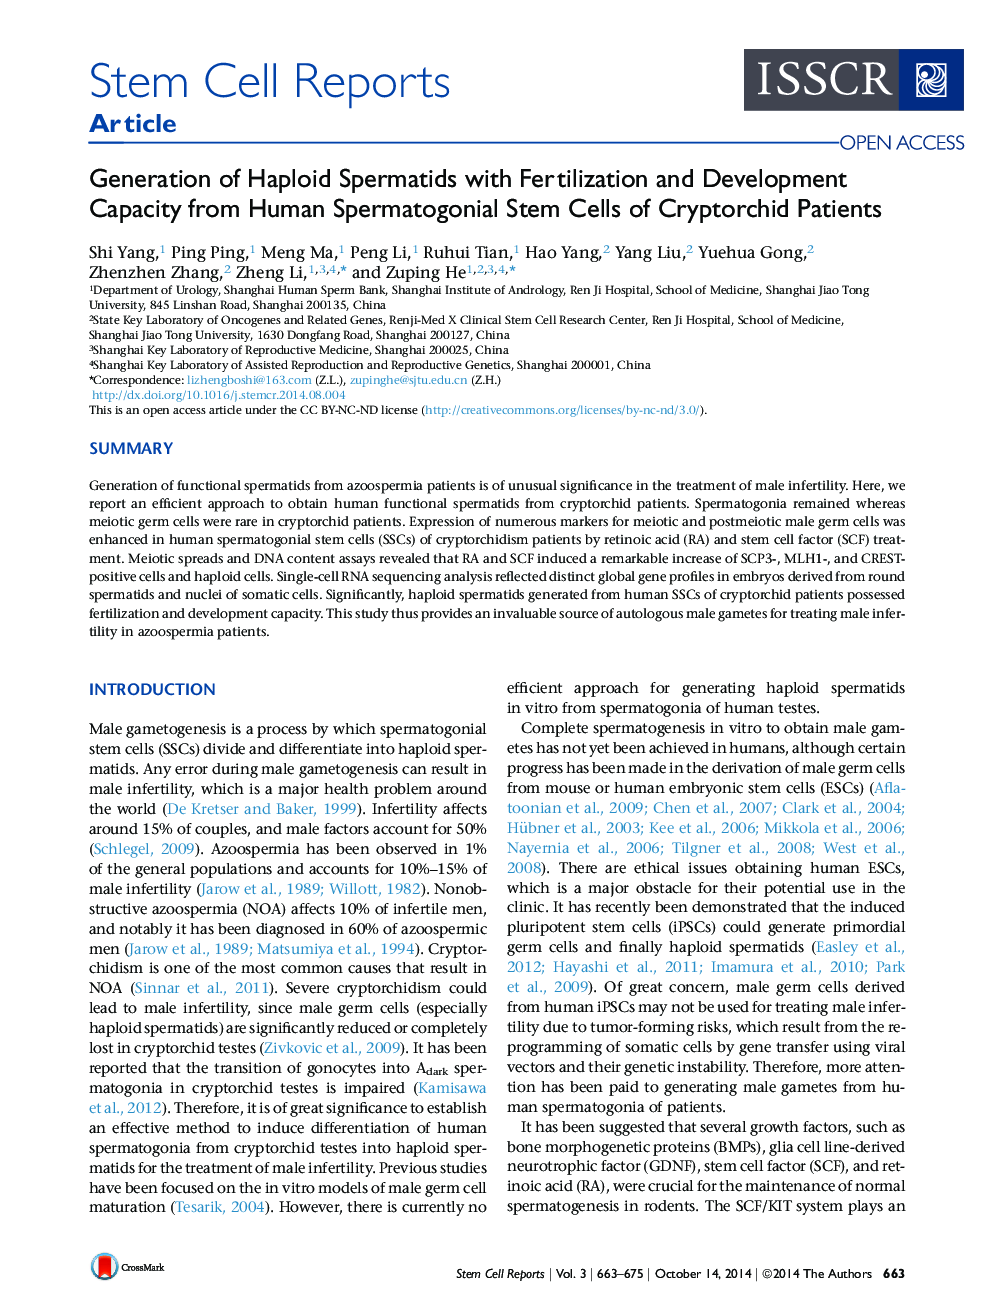 تولید اسفروماهای هپلوئید با باروری و رشد ظرفیت از سلول های بنیادی اسپرماتوگونال انسانی در بیماران کریپتورشید 